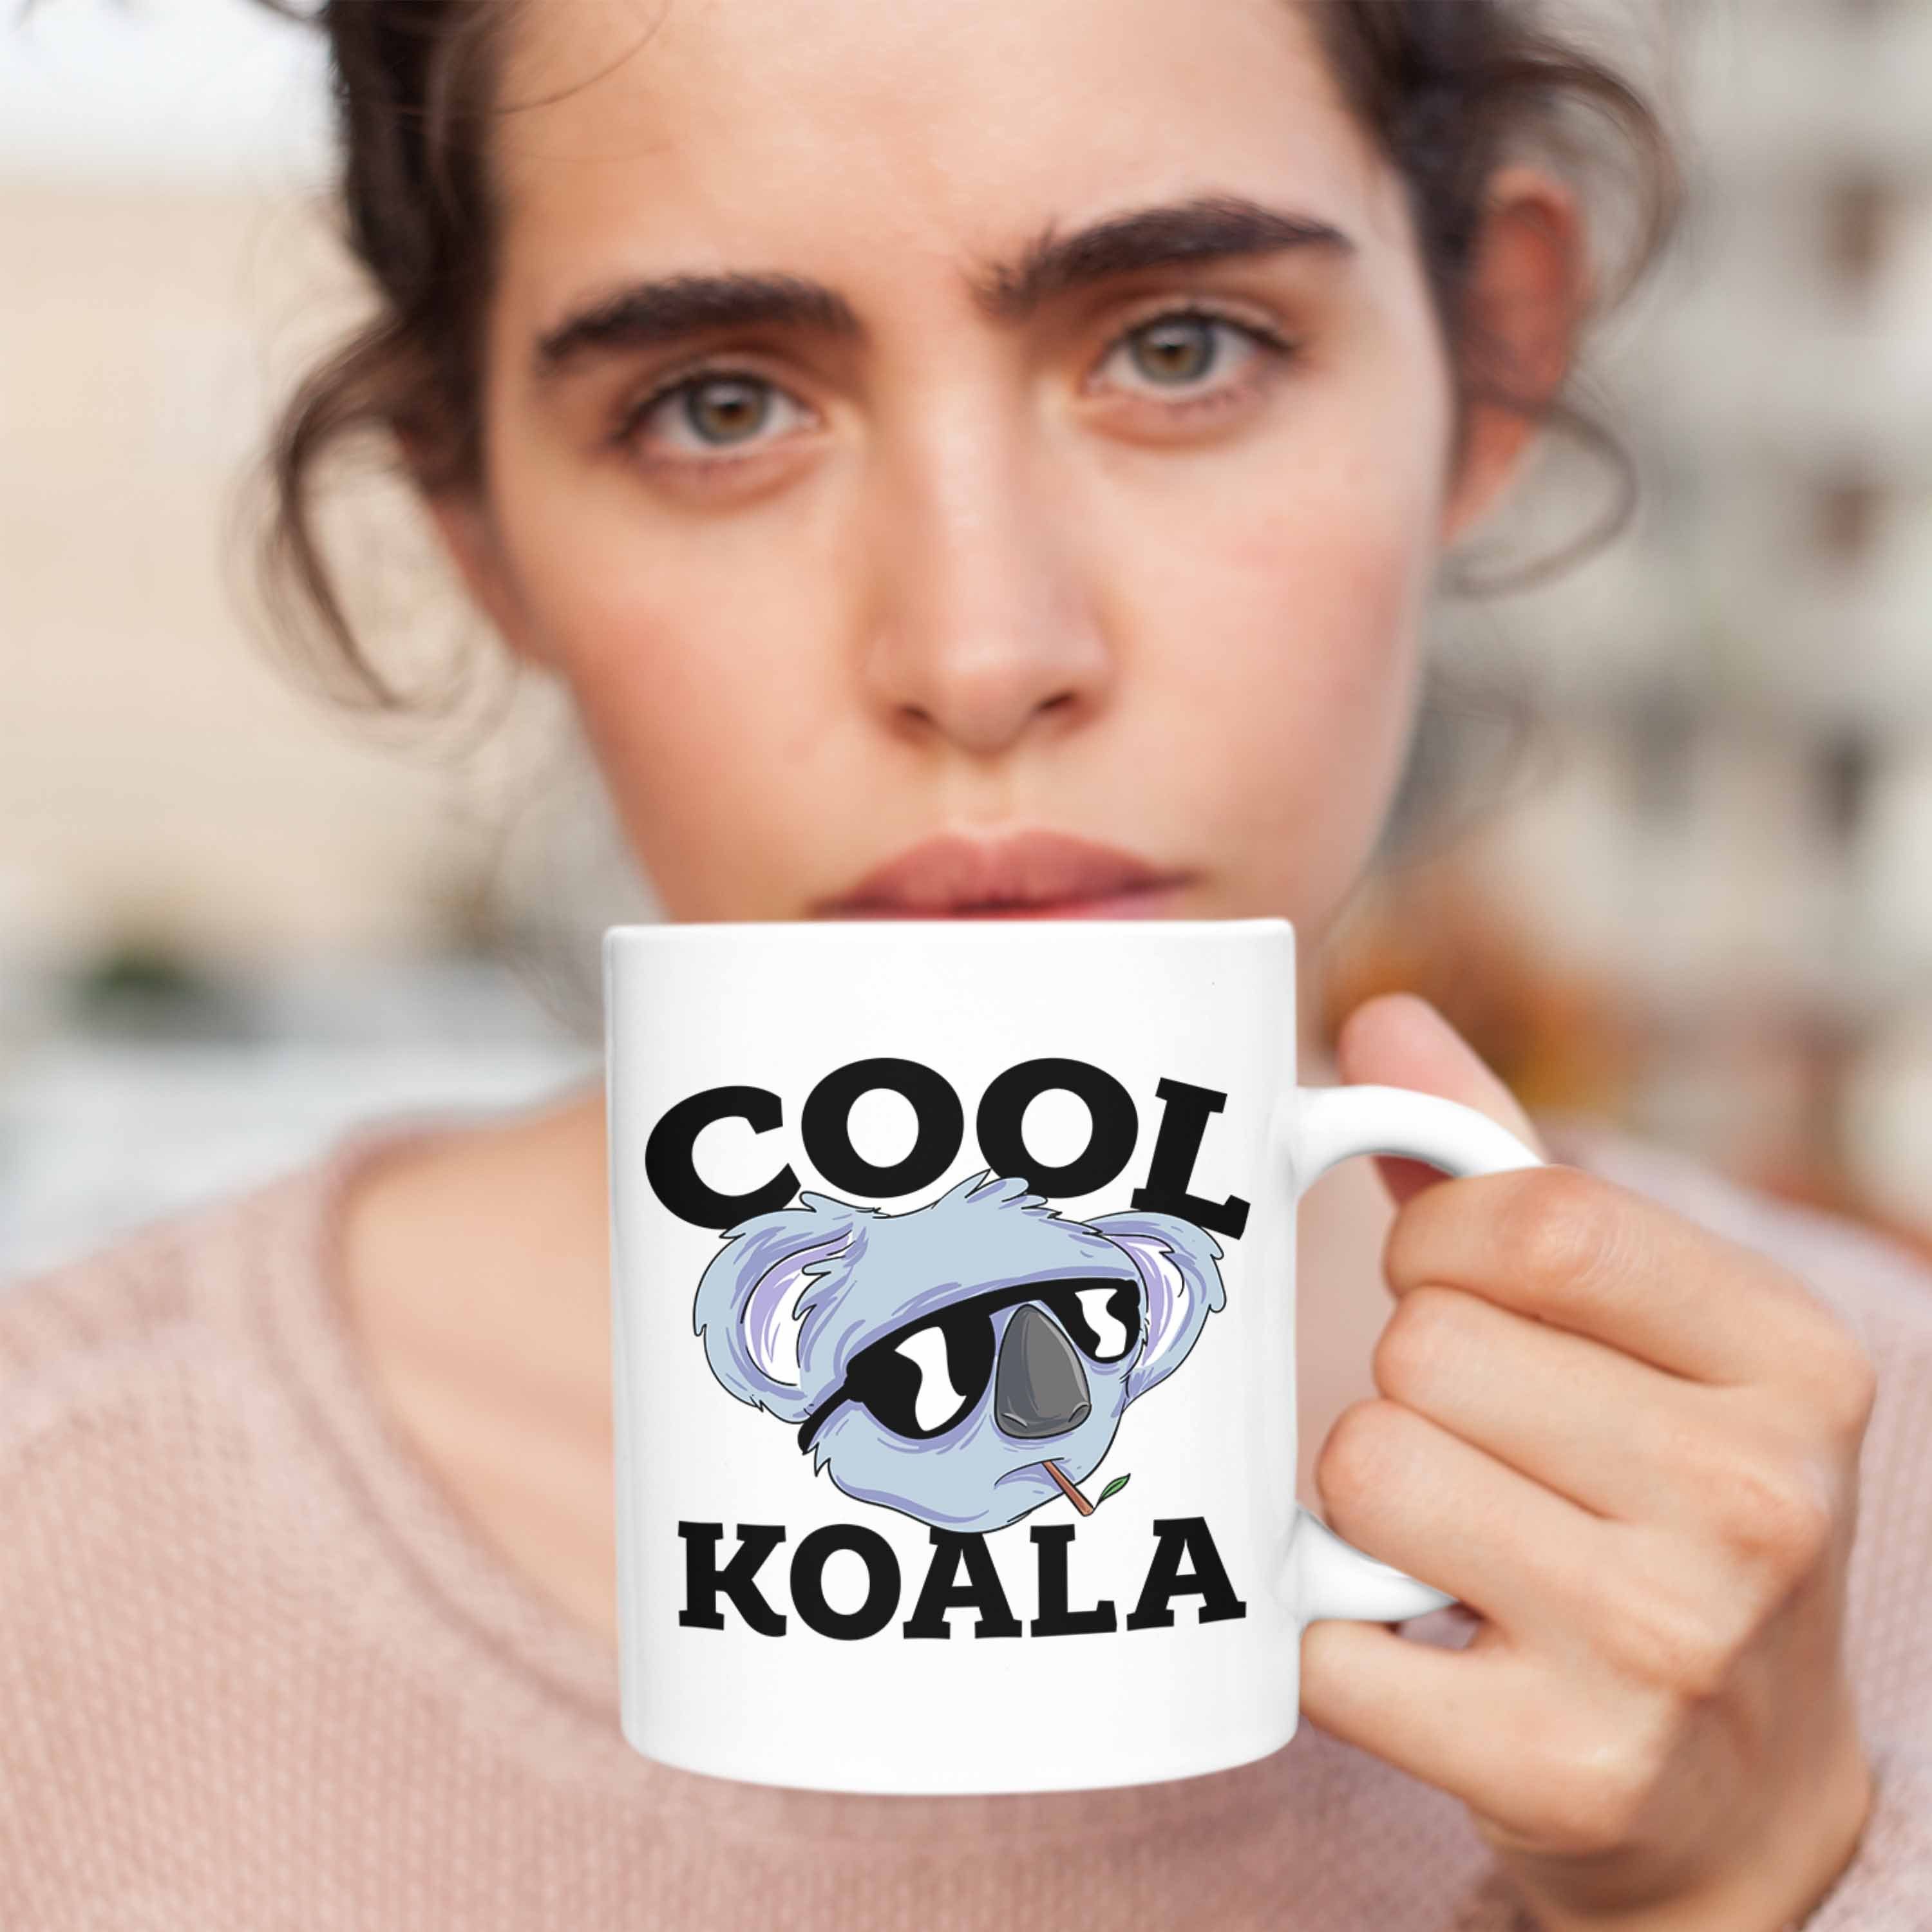 Koala-Liebhaber Weiss Trendation Koala Tasse Koala-Aufdruck Tasse Tasse Geschenkidee für